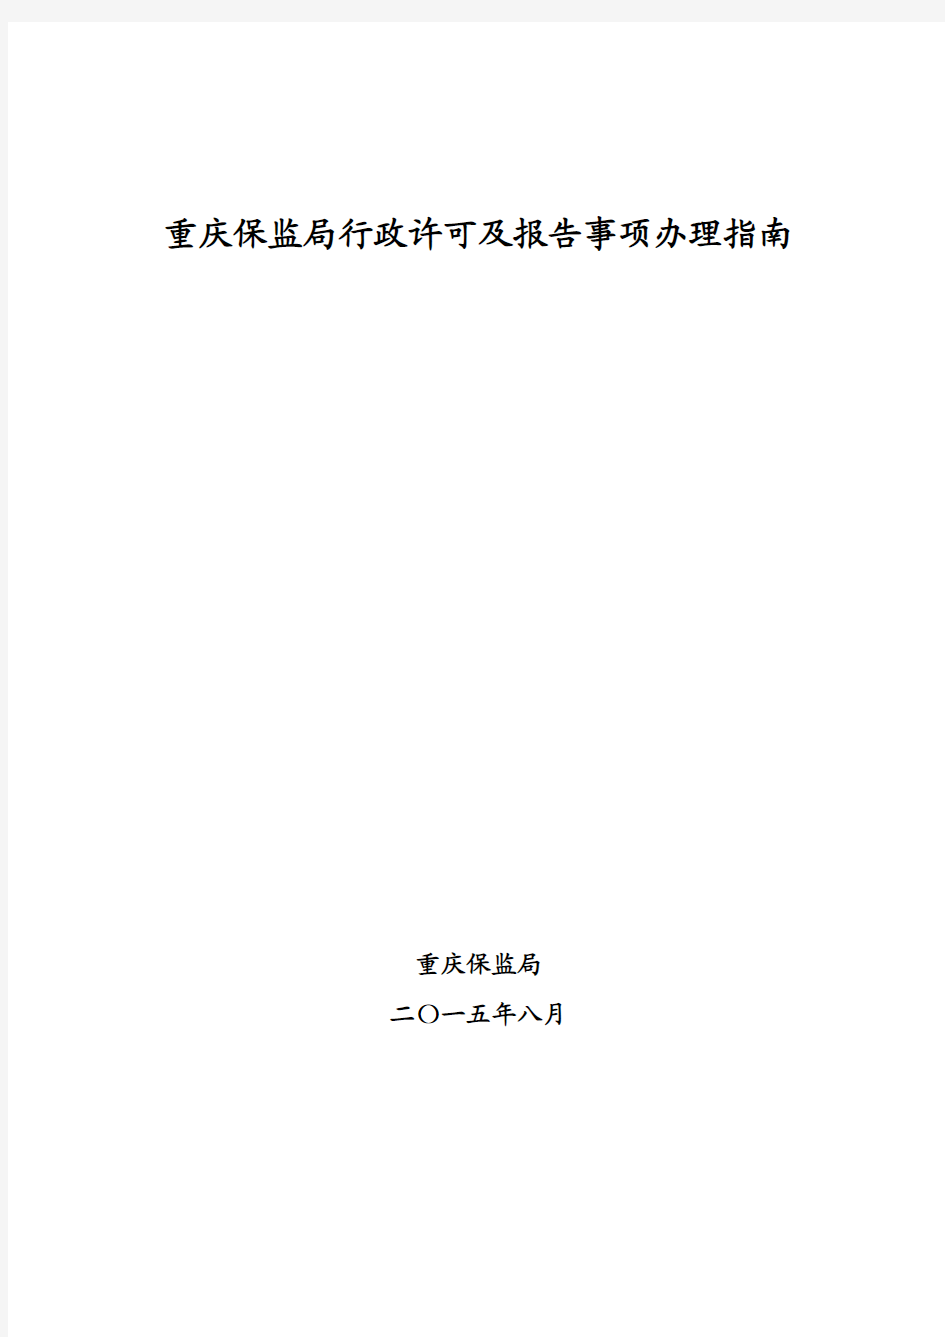 重庆保监局行政许可及报告事项办理指南(2015年8月修订版)